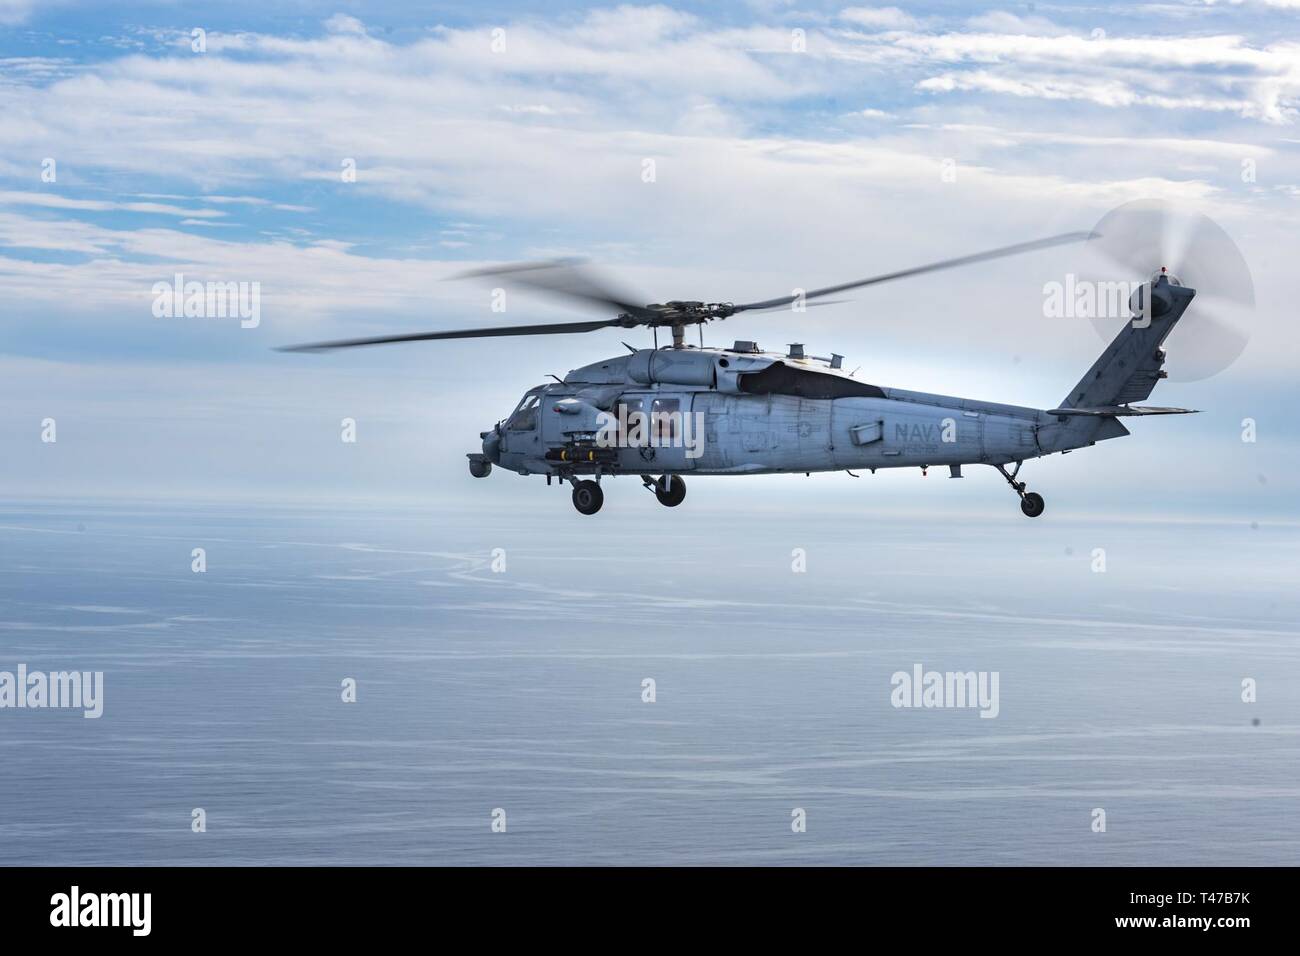 Océano Atlántico, (11 de marzo de 2019) un MH-60 Seahawk, asignados a los "caballeros del Mar" del escuadrón de helicópteros de combate de mar (HSC) 22, se prepara para disparar un misil AGM-114 Hellfire durante el ejercicio salvaje de hielo. Savage El hielo es un ejercicio realizado por helicópteros de combate de mar Atlántico Escuela de armas que permite la oportunidad de practicar los escuadrones de participar objetivos móviles. Foto de stock